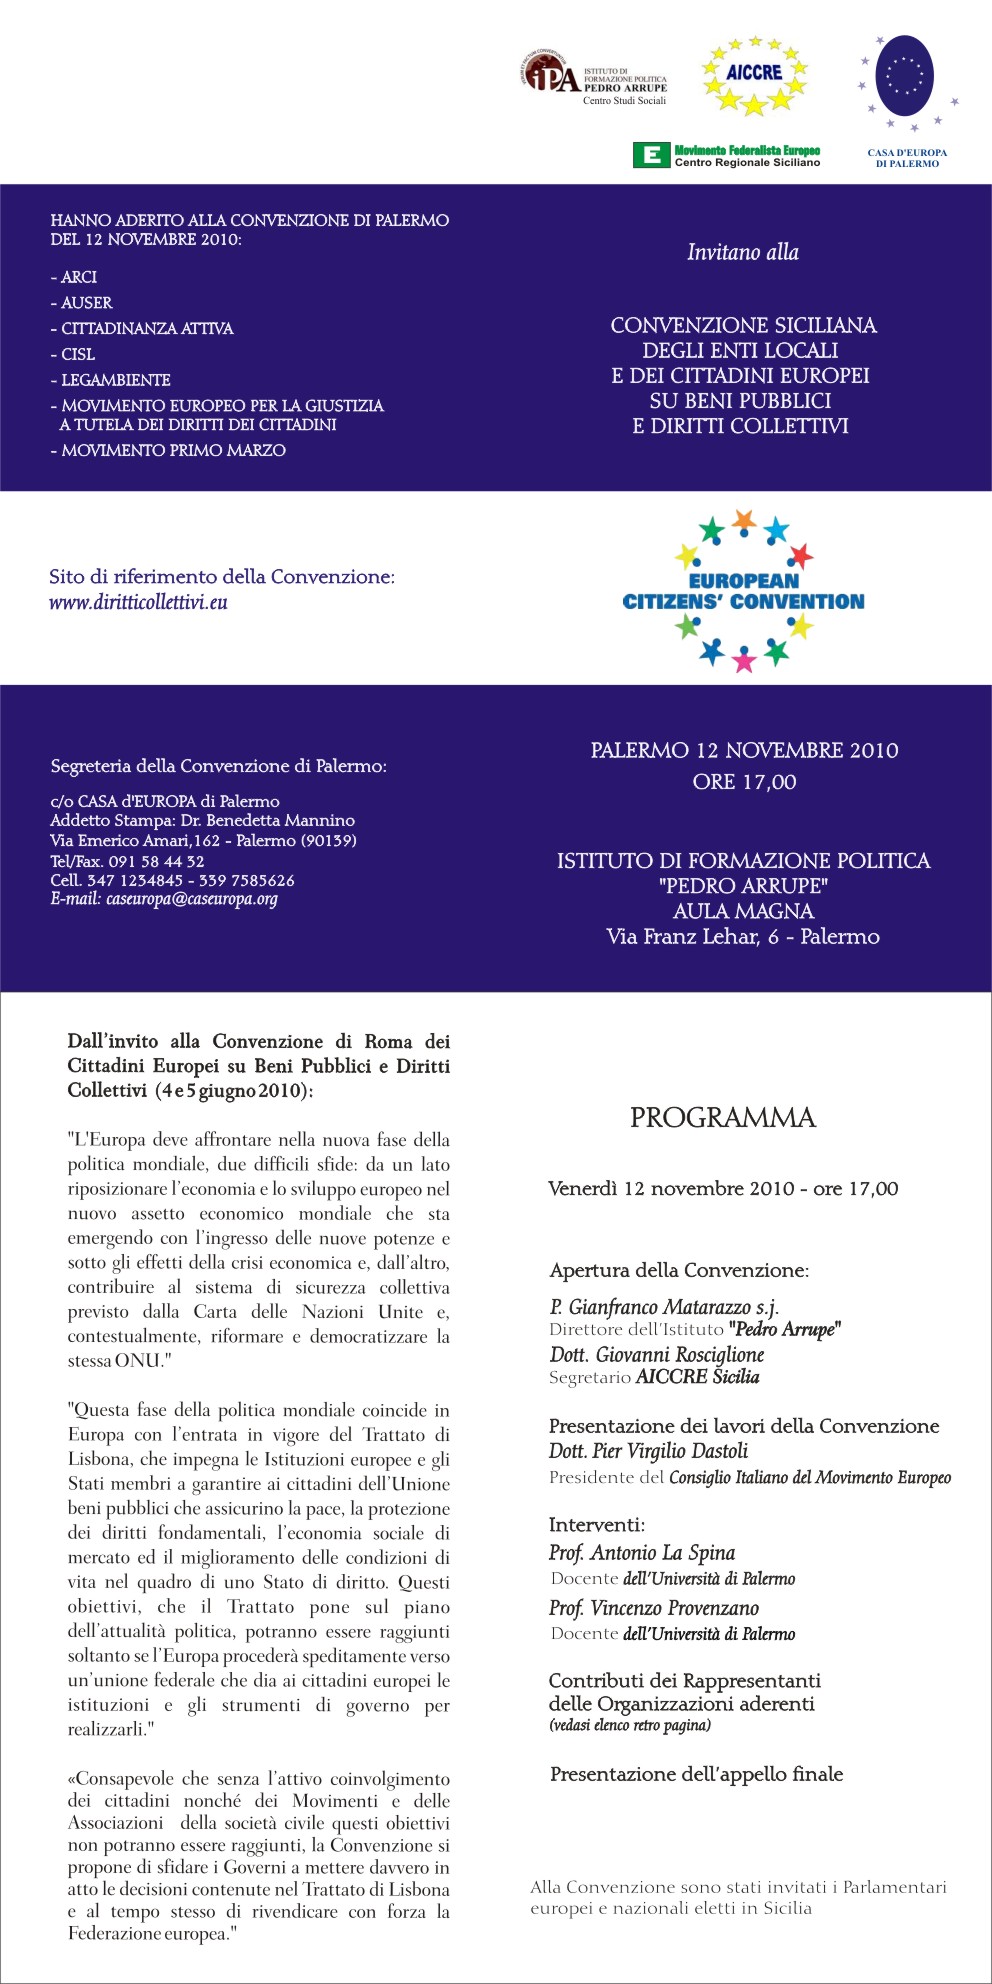 Invito e programma della Convenzione di Palermo